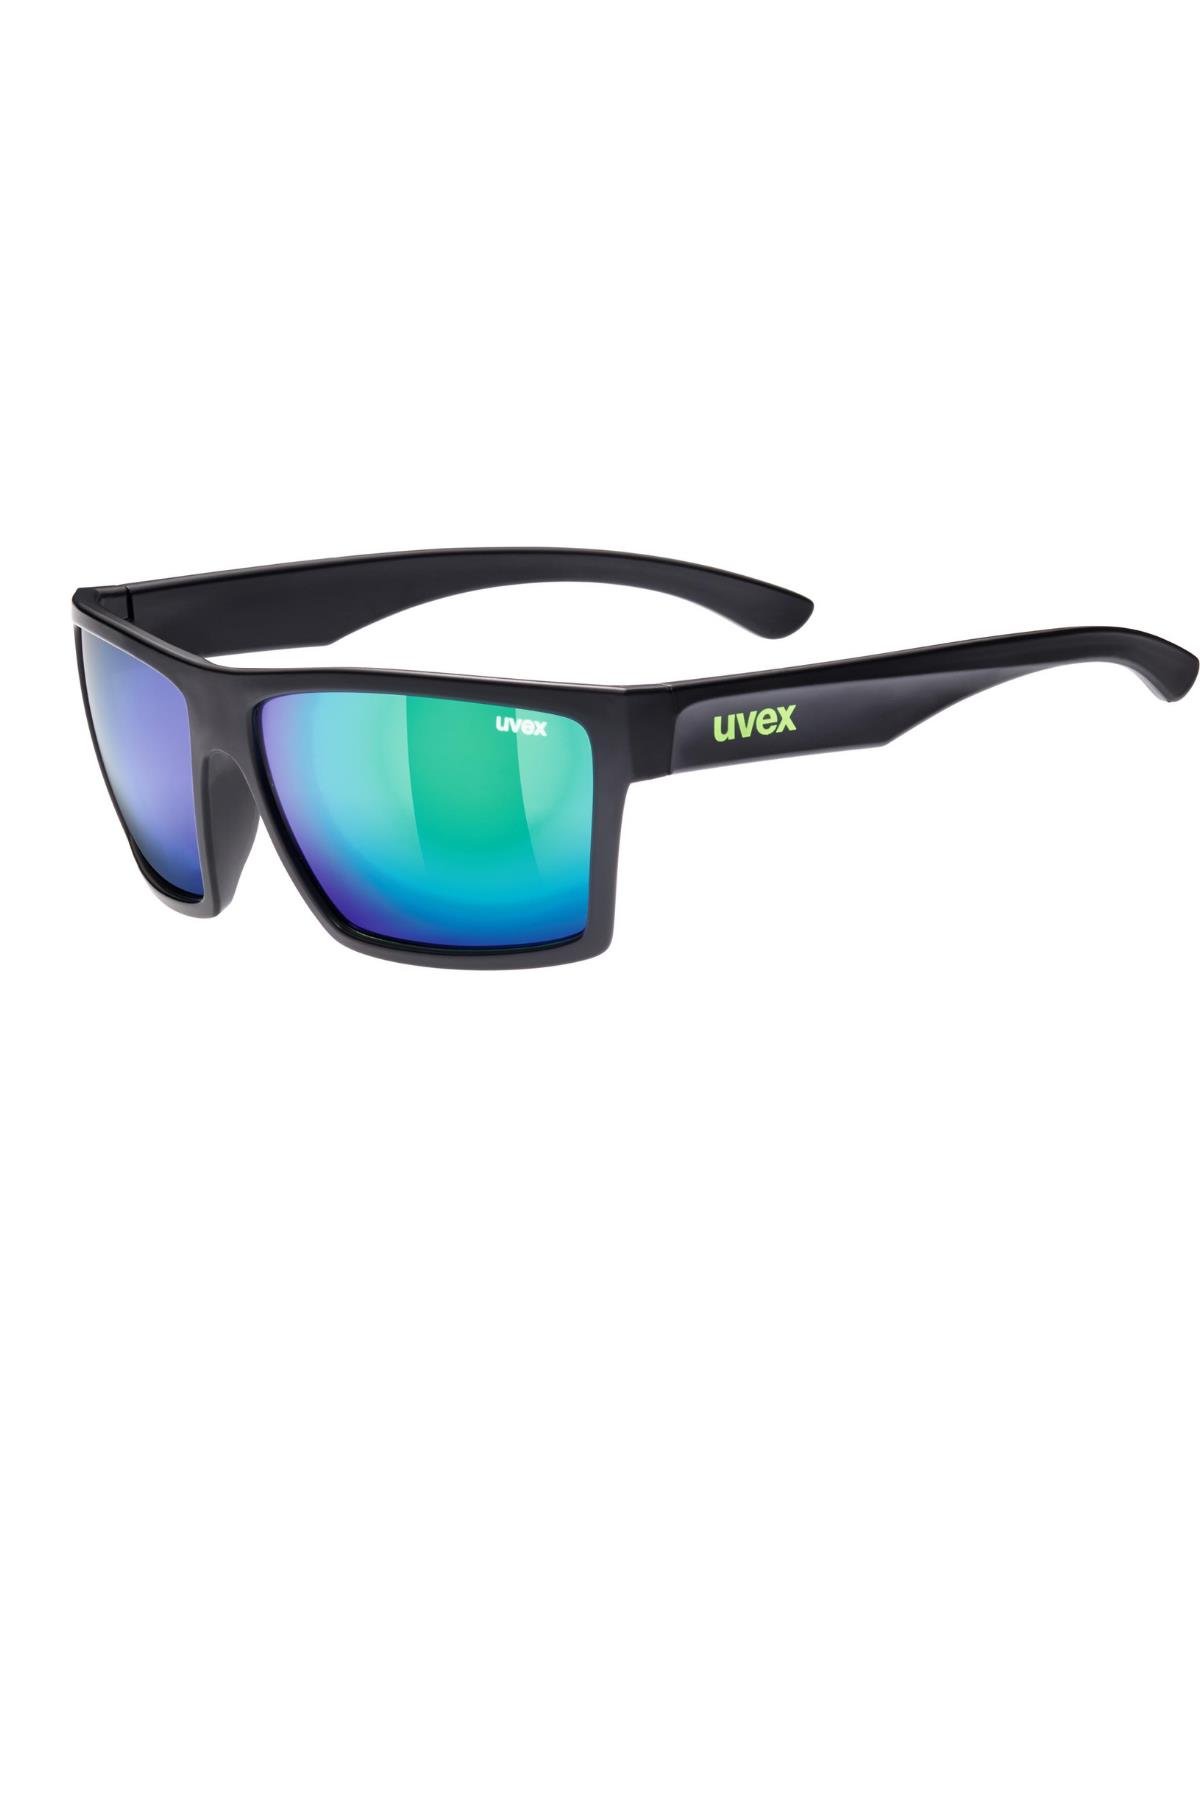 Uvex Lgl 29 Black Mat / Mirror Green Güneş Gözlüğü